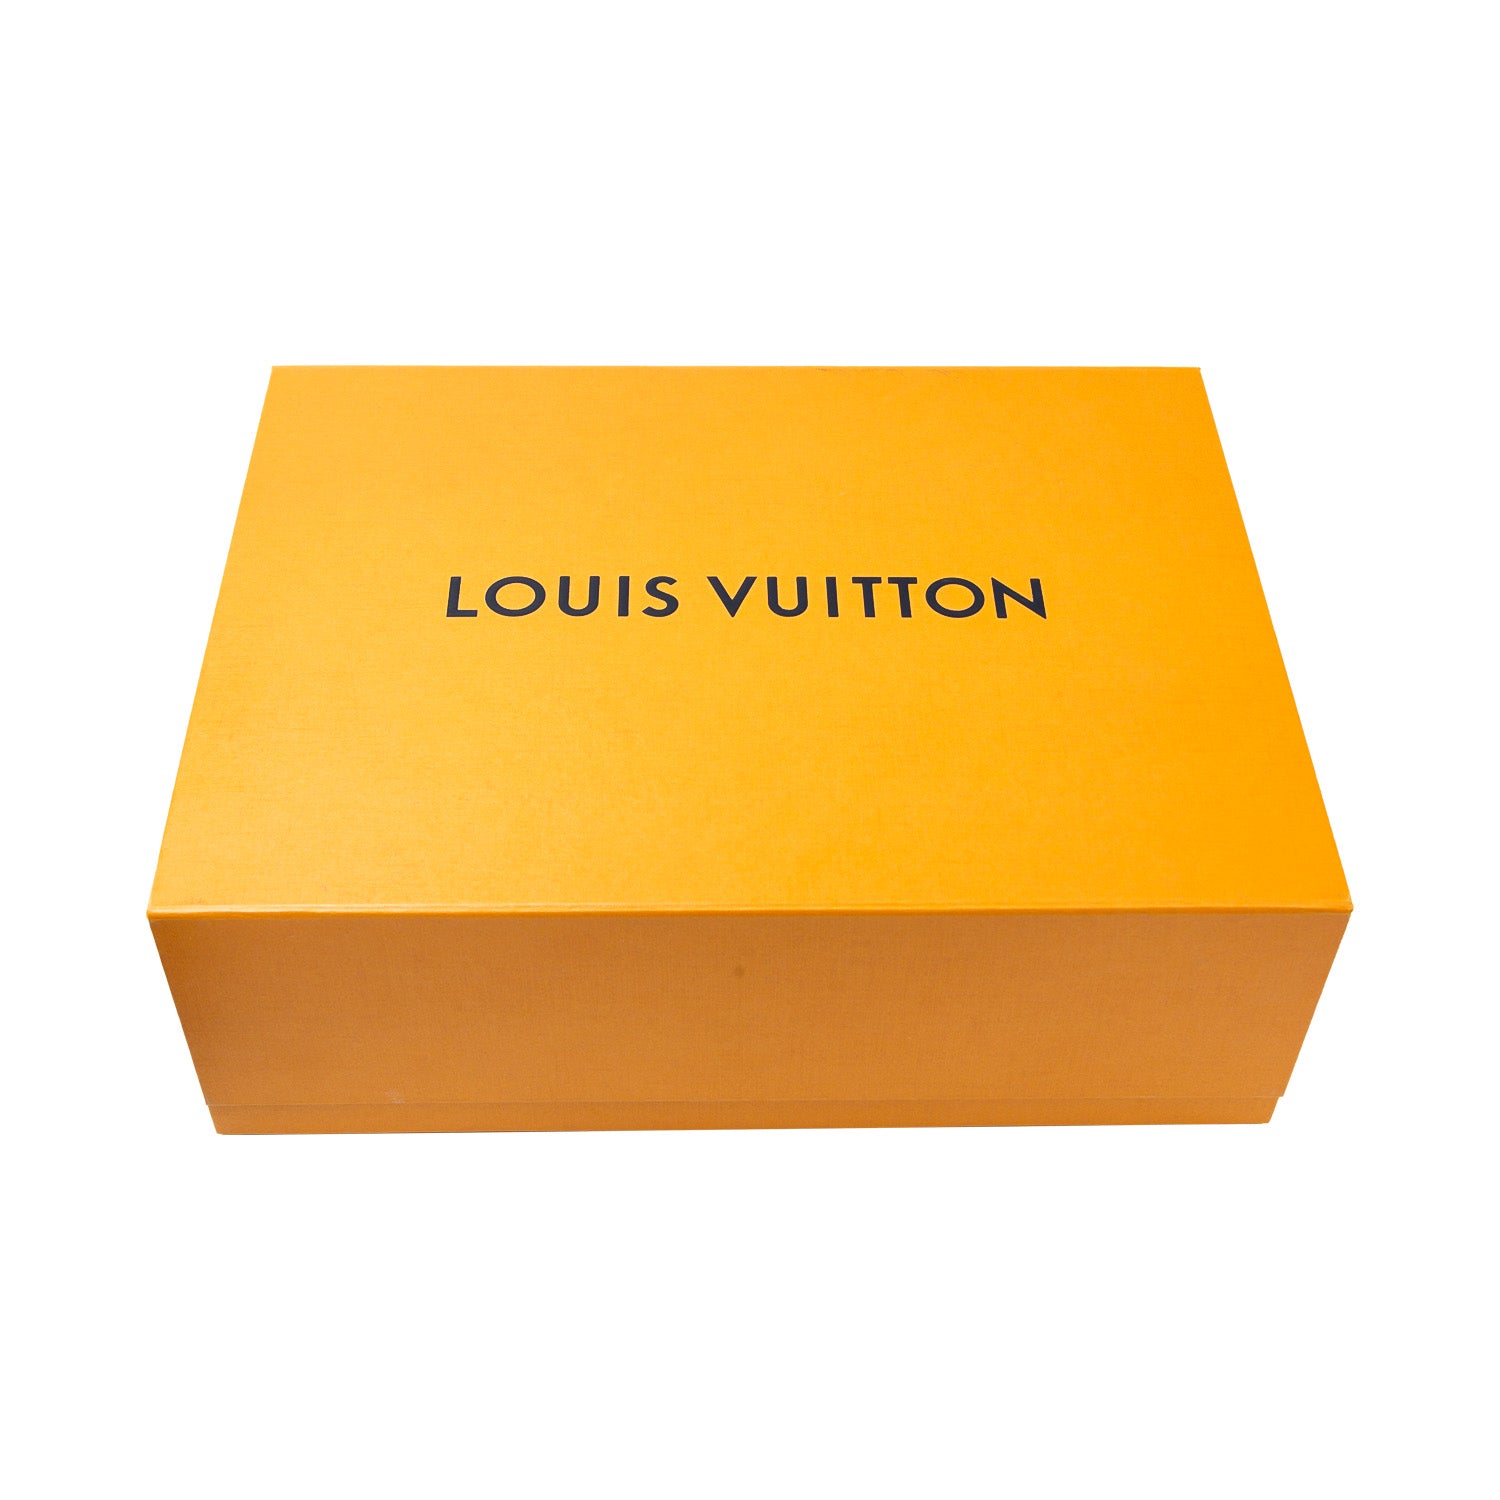 Cangurera Louis Vuitton